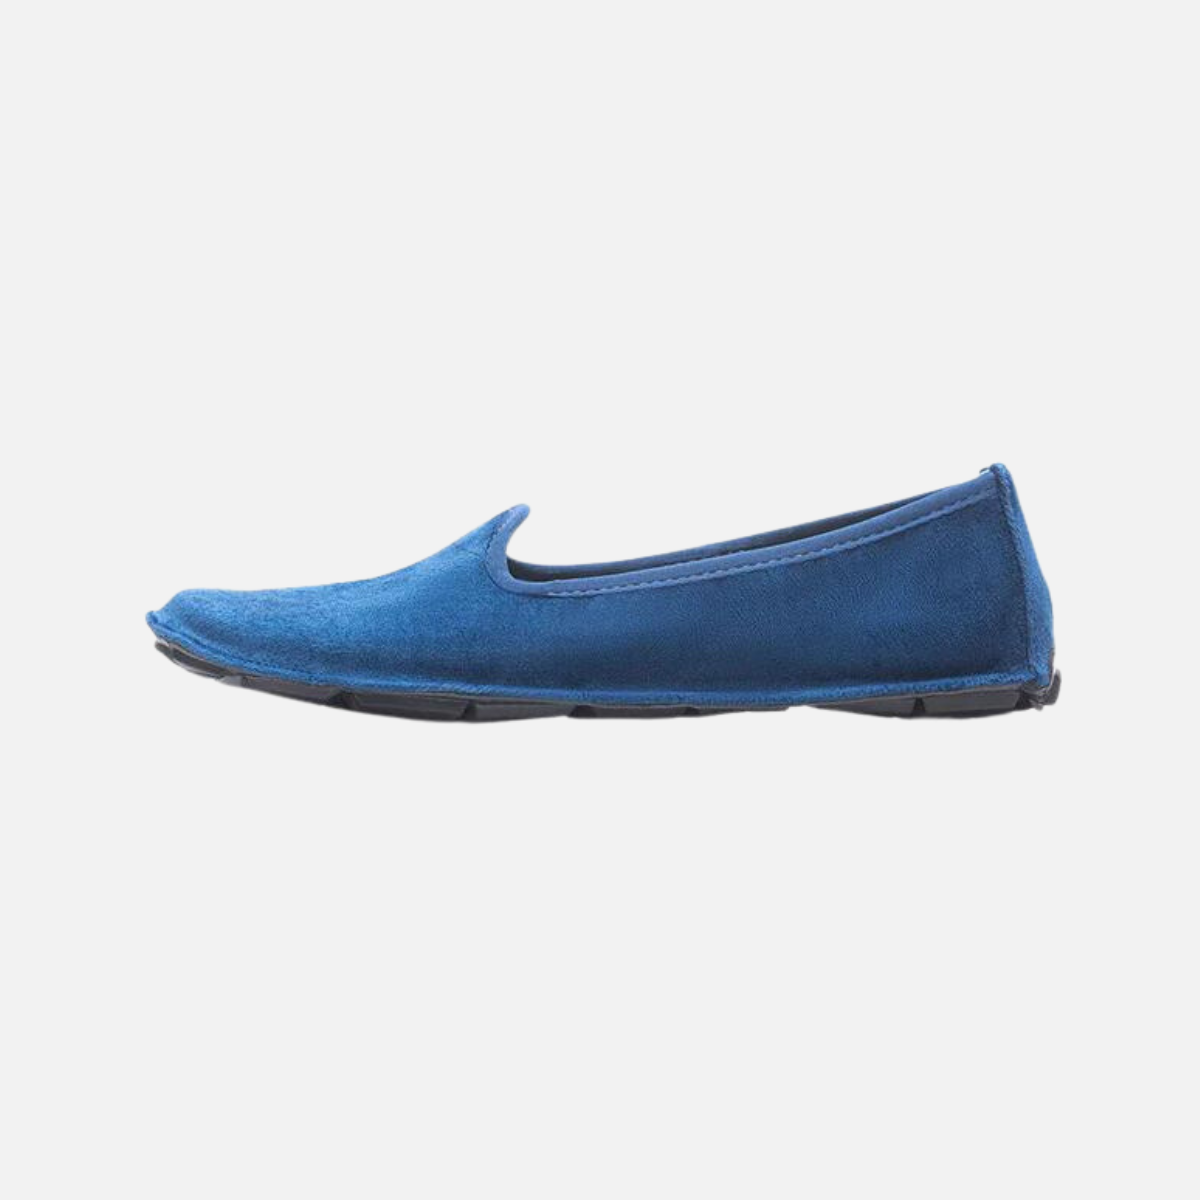 Vibram ONEQ Slipon Velvet Women's Casual Shoes -Blue/Black